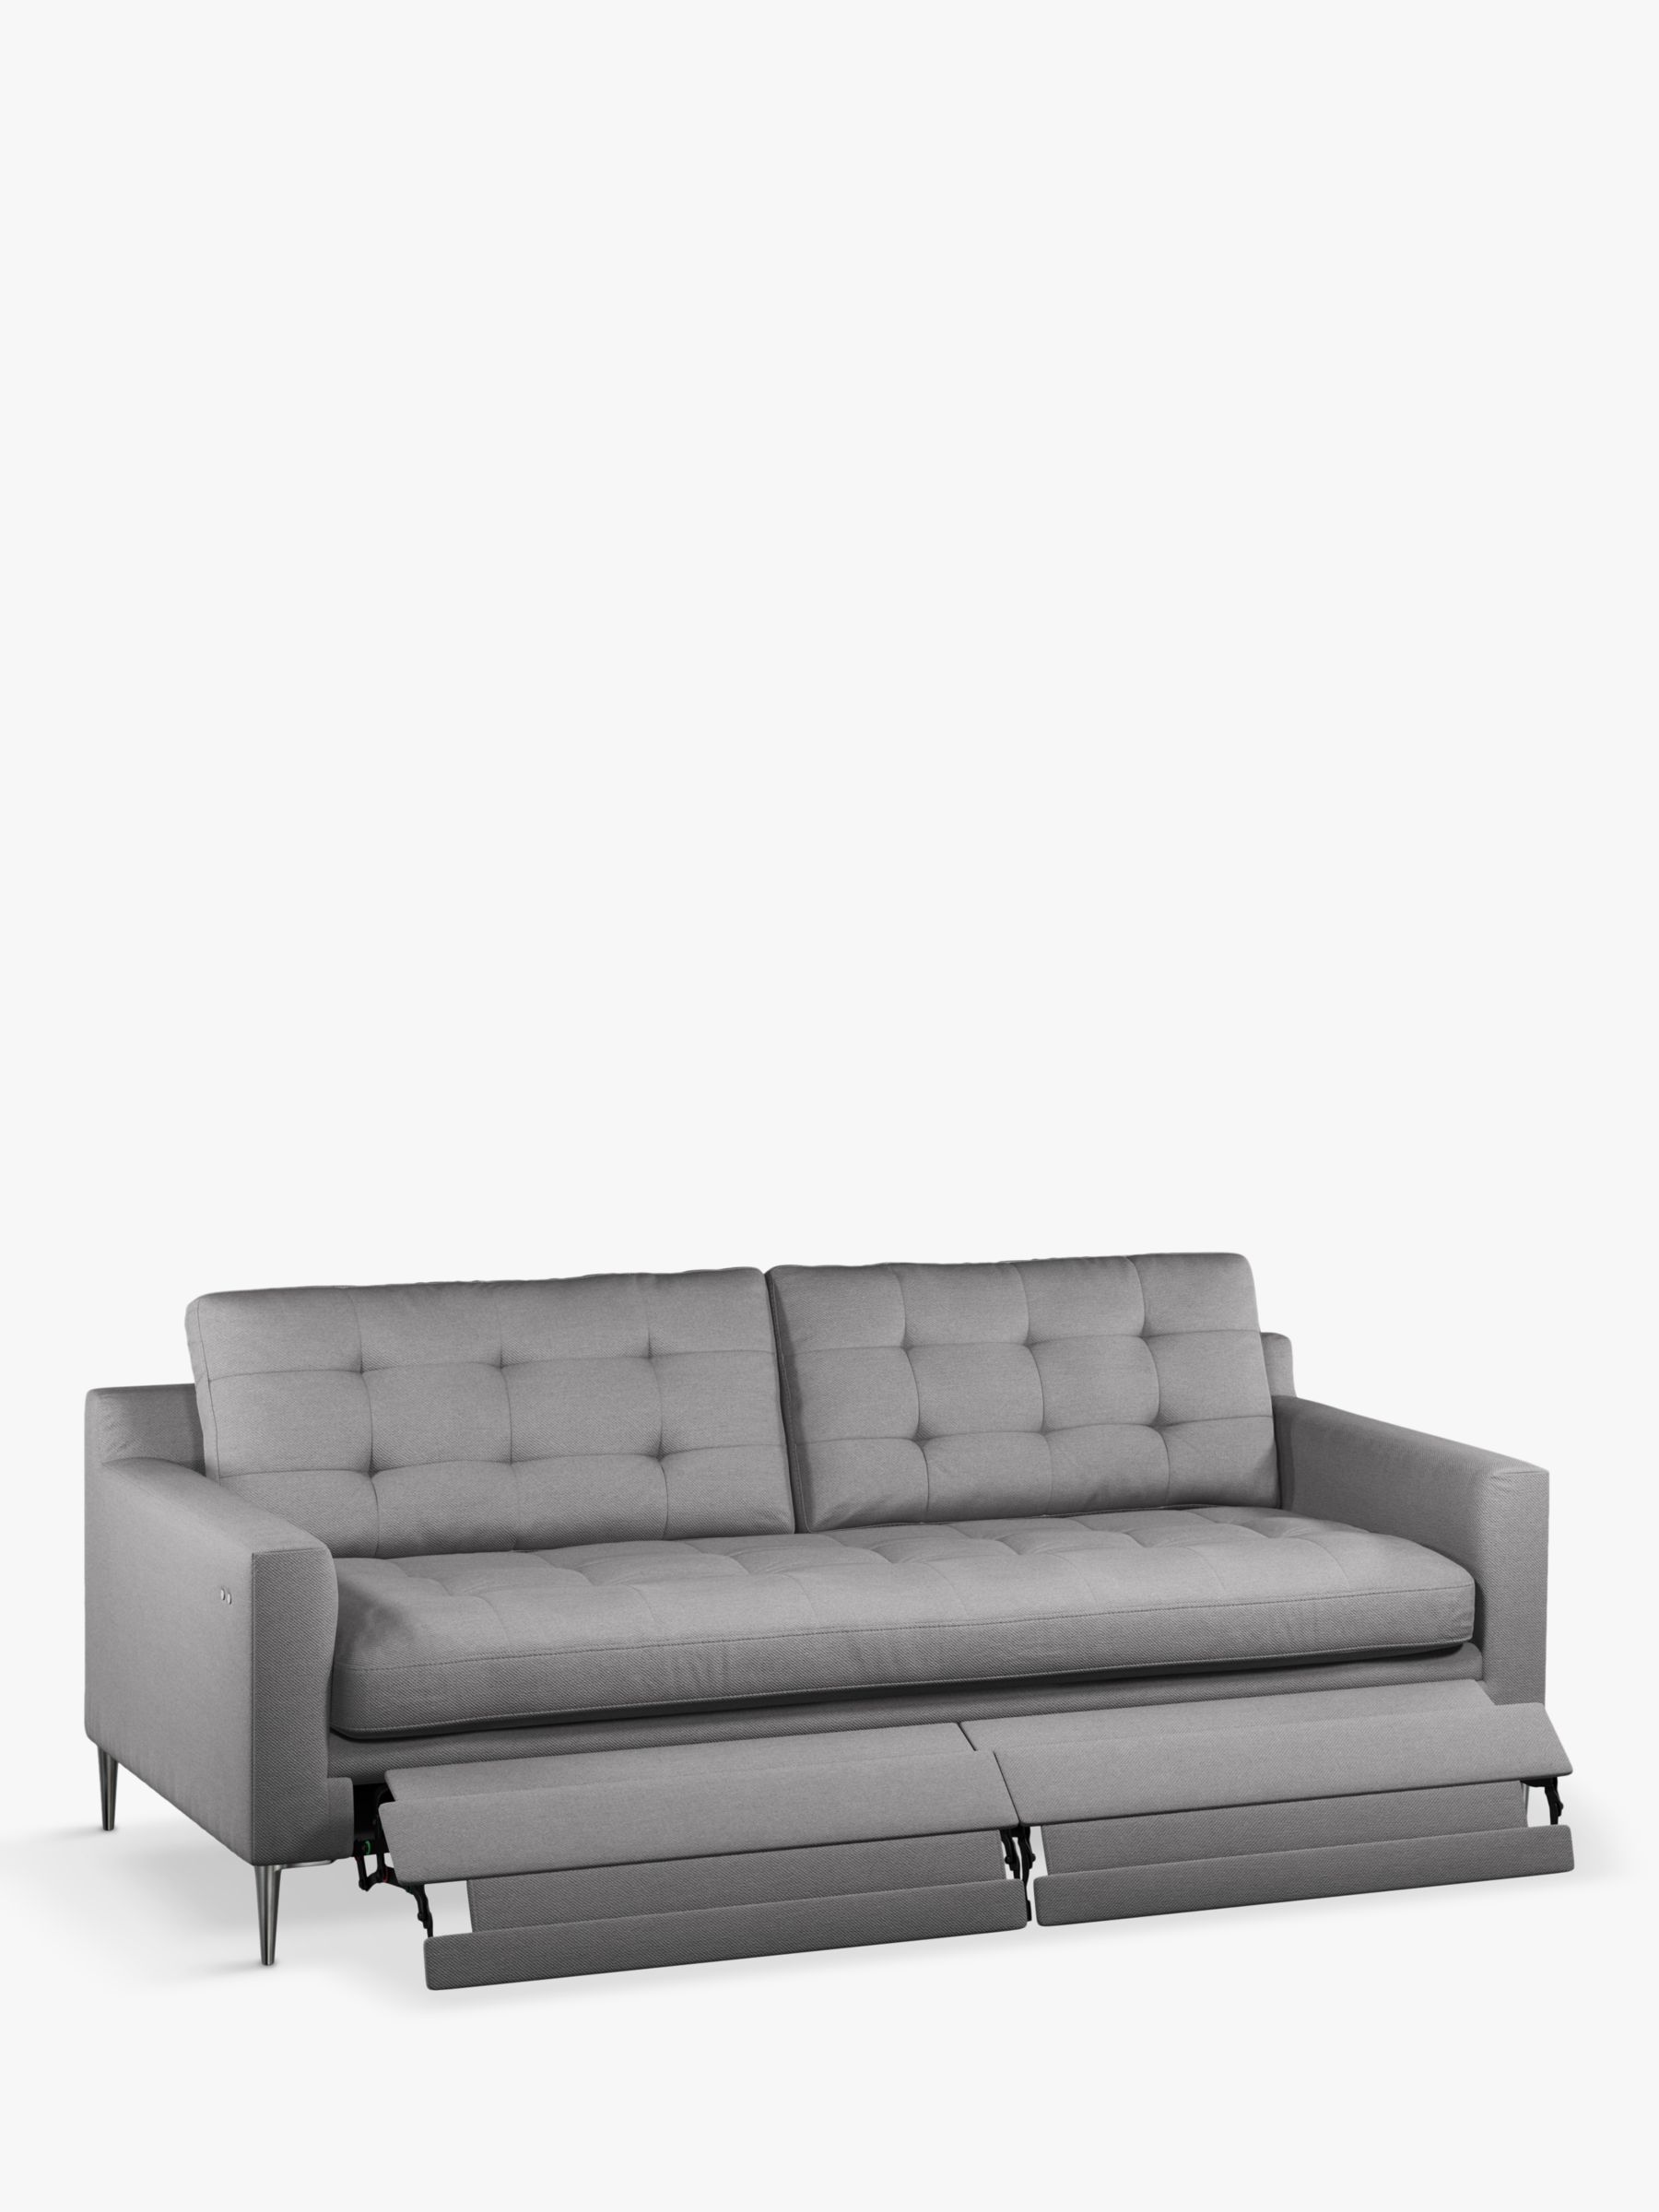 John Lewis Draper II Large 3 Seater Motion Sofa, Metal Leg